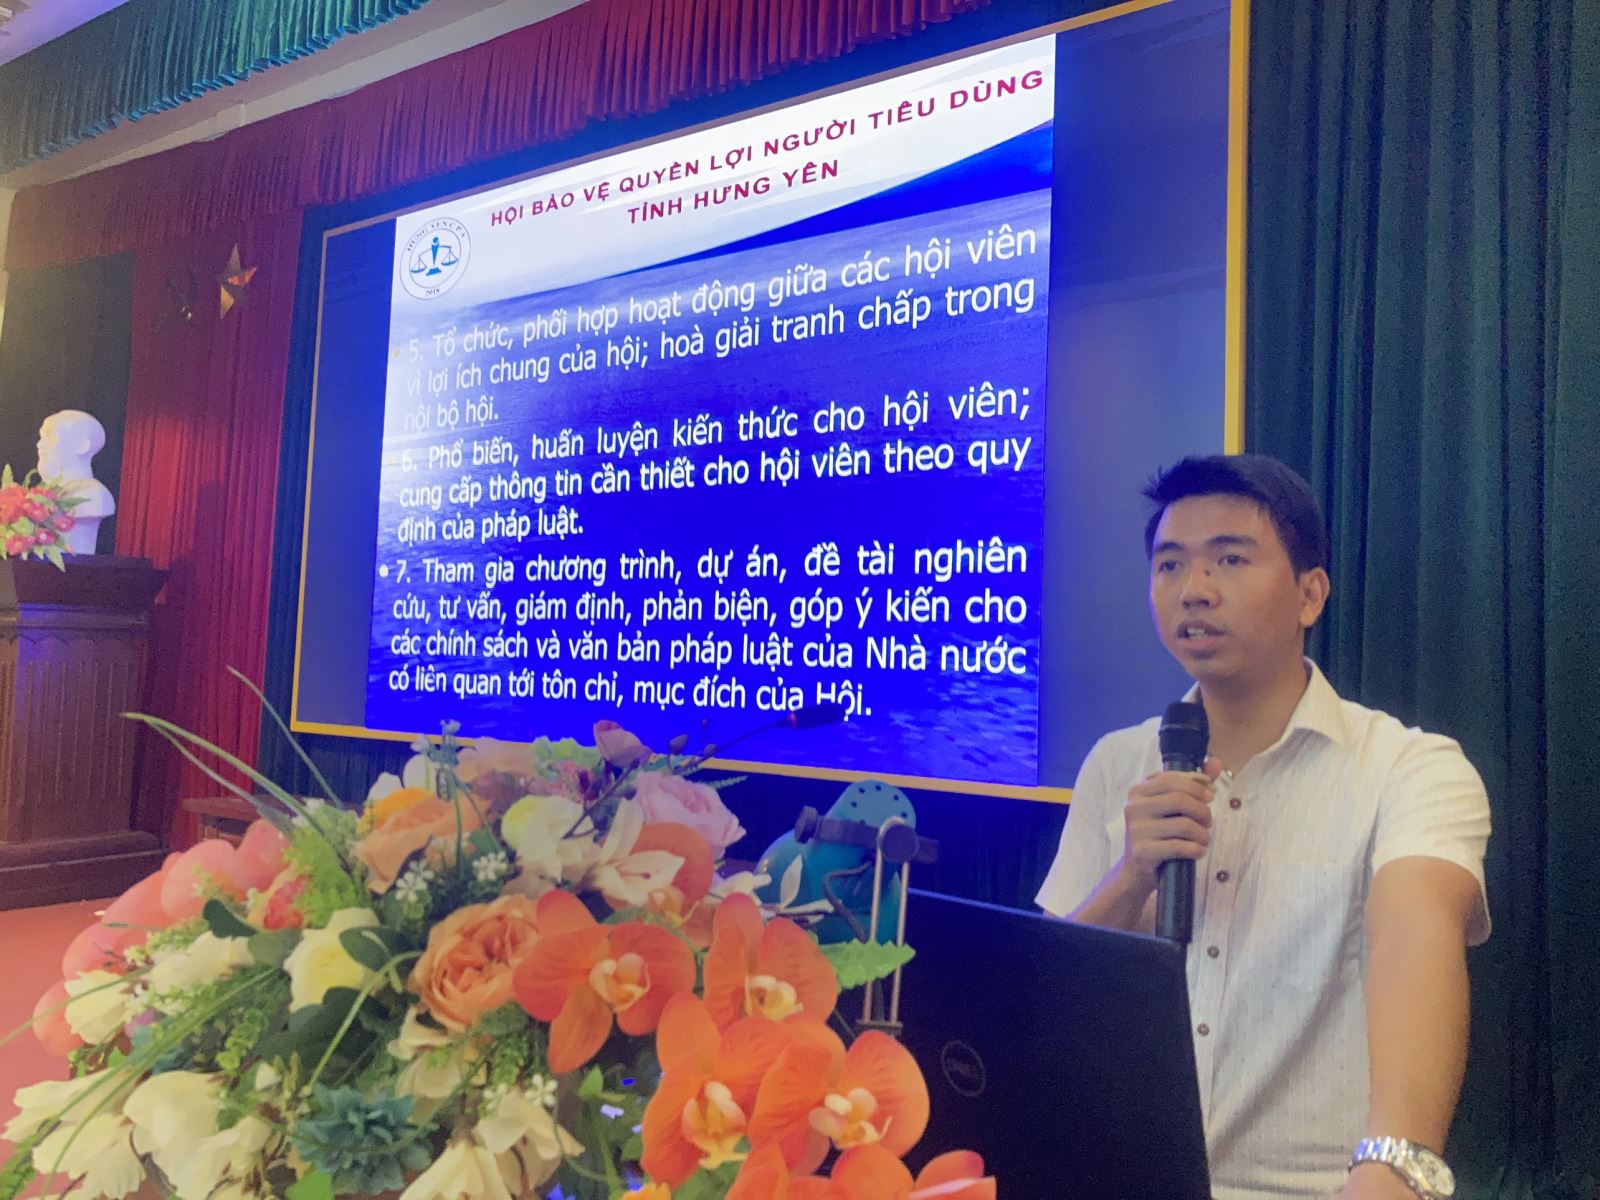 Hội nghị tuyên truyền năm 2023 - Thị xã Mỹ Hào